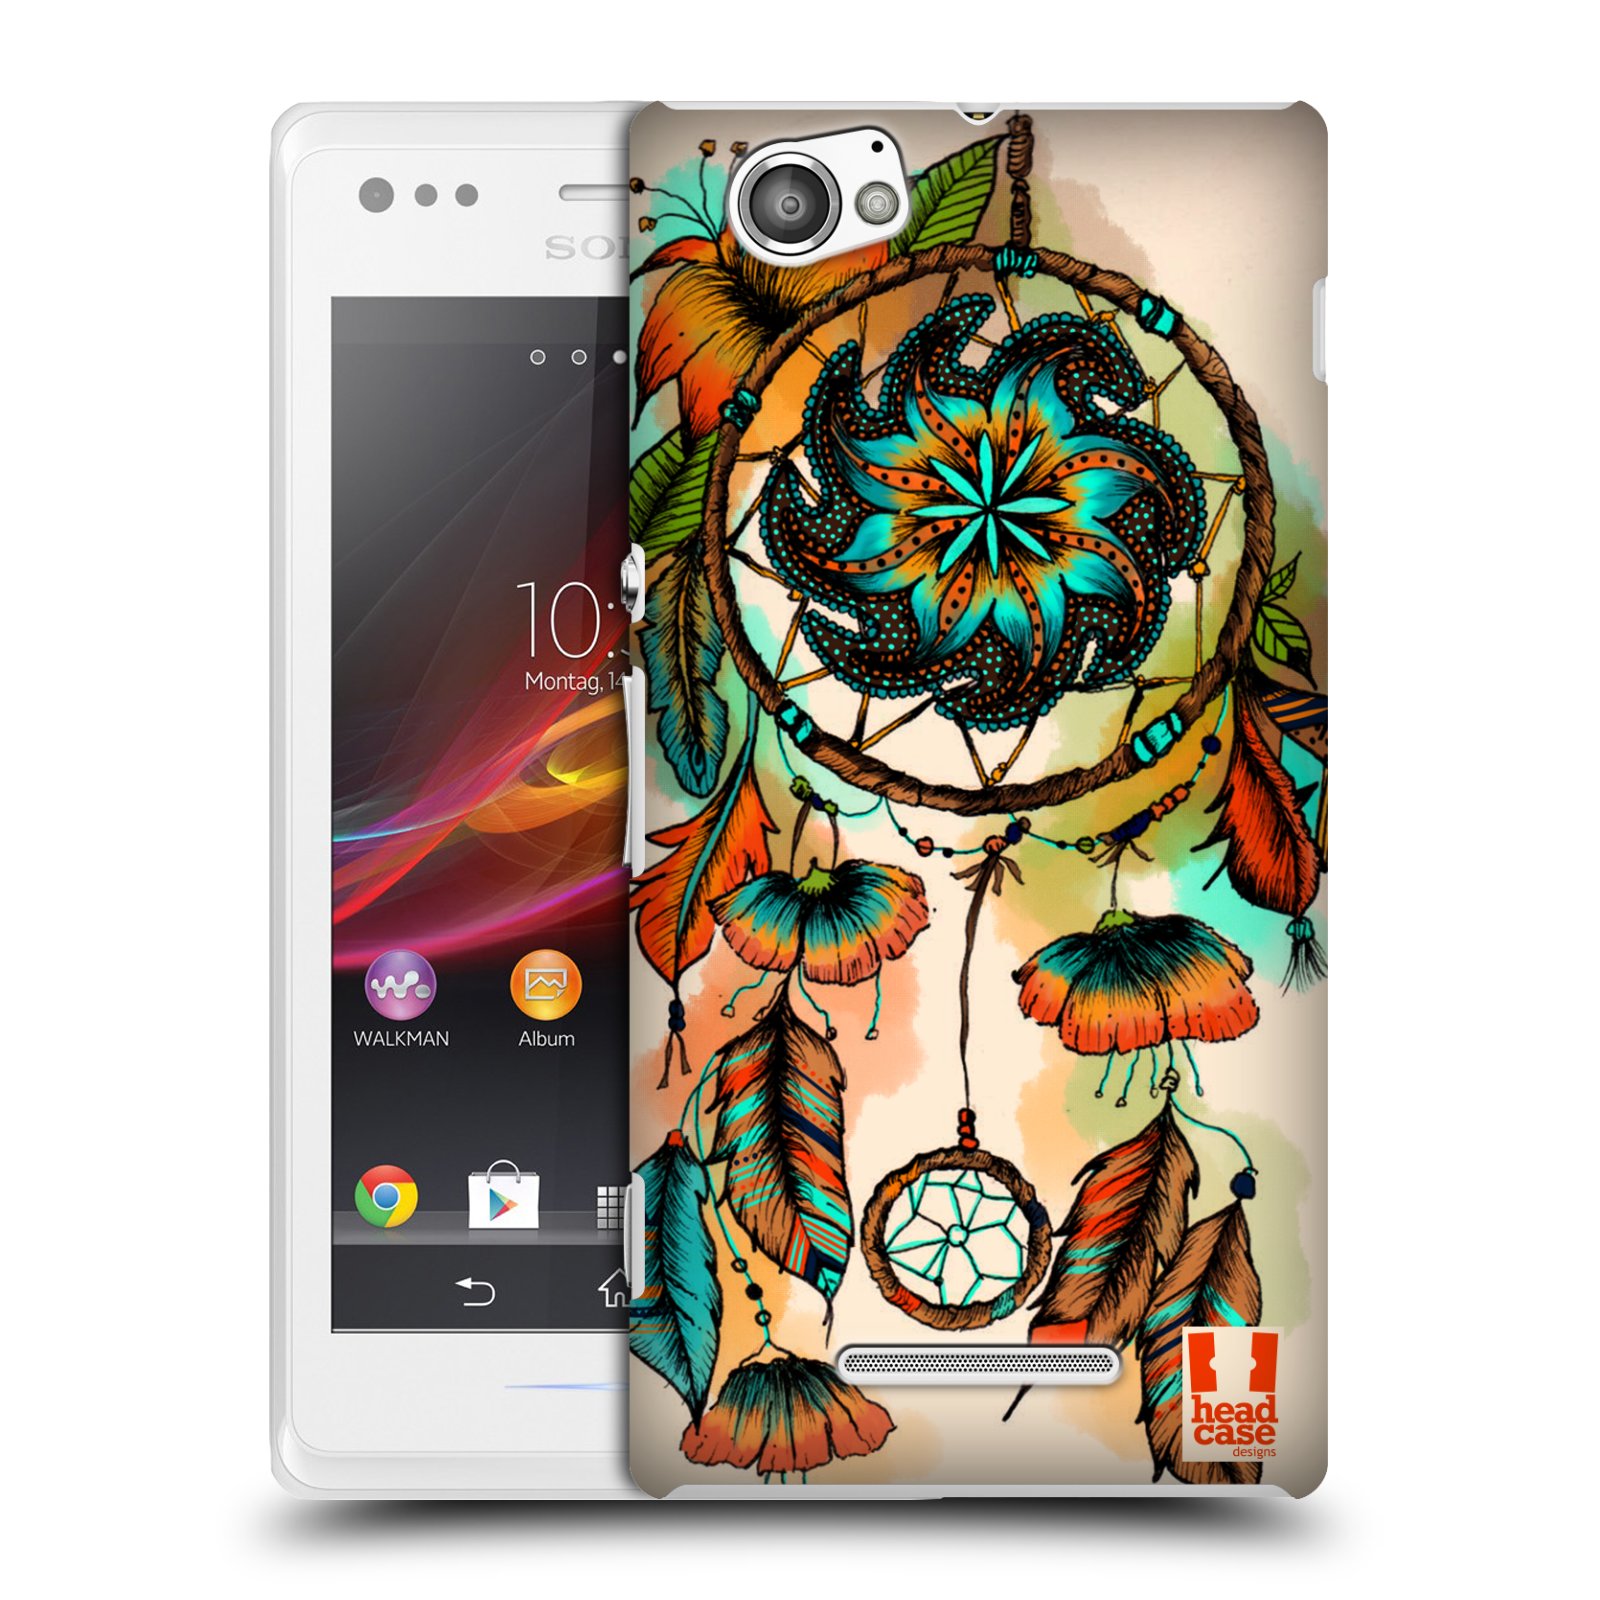 HEAD CASE plastový obal na mobil Sony Xperia M vzor Květy lapač snů merňka oranžová